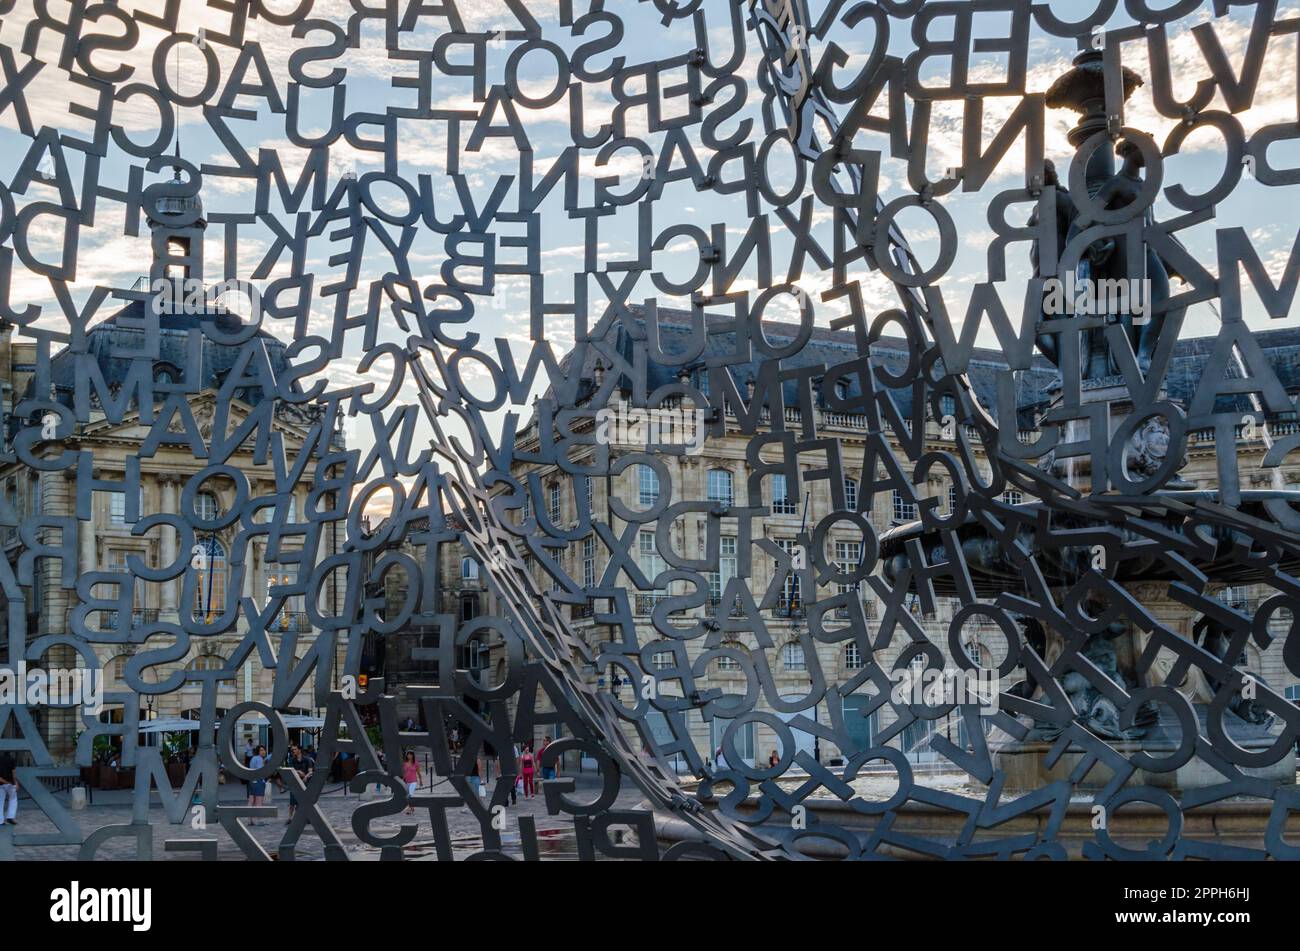 BORDEAUX, FRANKREICH - 16. AUGUST 2013: Details der modernen Skulptur „Haus des Wissens“, die vom spanischen Künstler Jaume Plensa im Jahr 2008 hergestellt wurde, eine Struktur aus Edelstahl, die zwischen dem 27. Juni und vorübergehend auf dem Place de la Bourse in Bordeaux, Frankreich, ausgestellt wurde Stockfoto